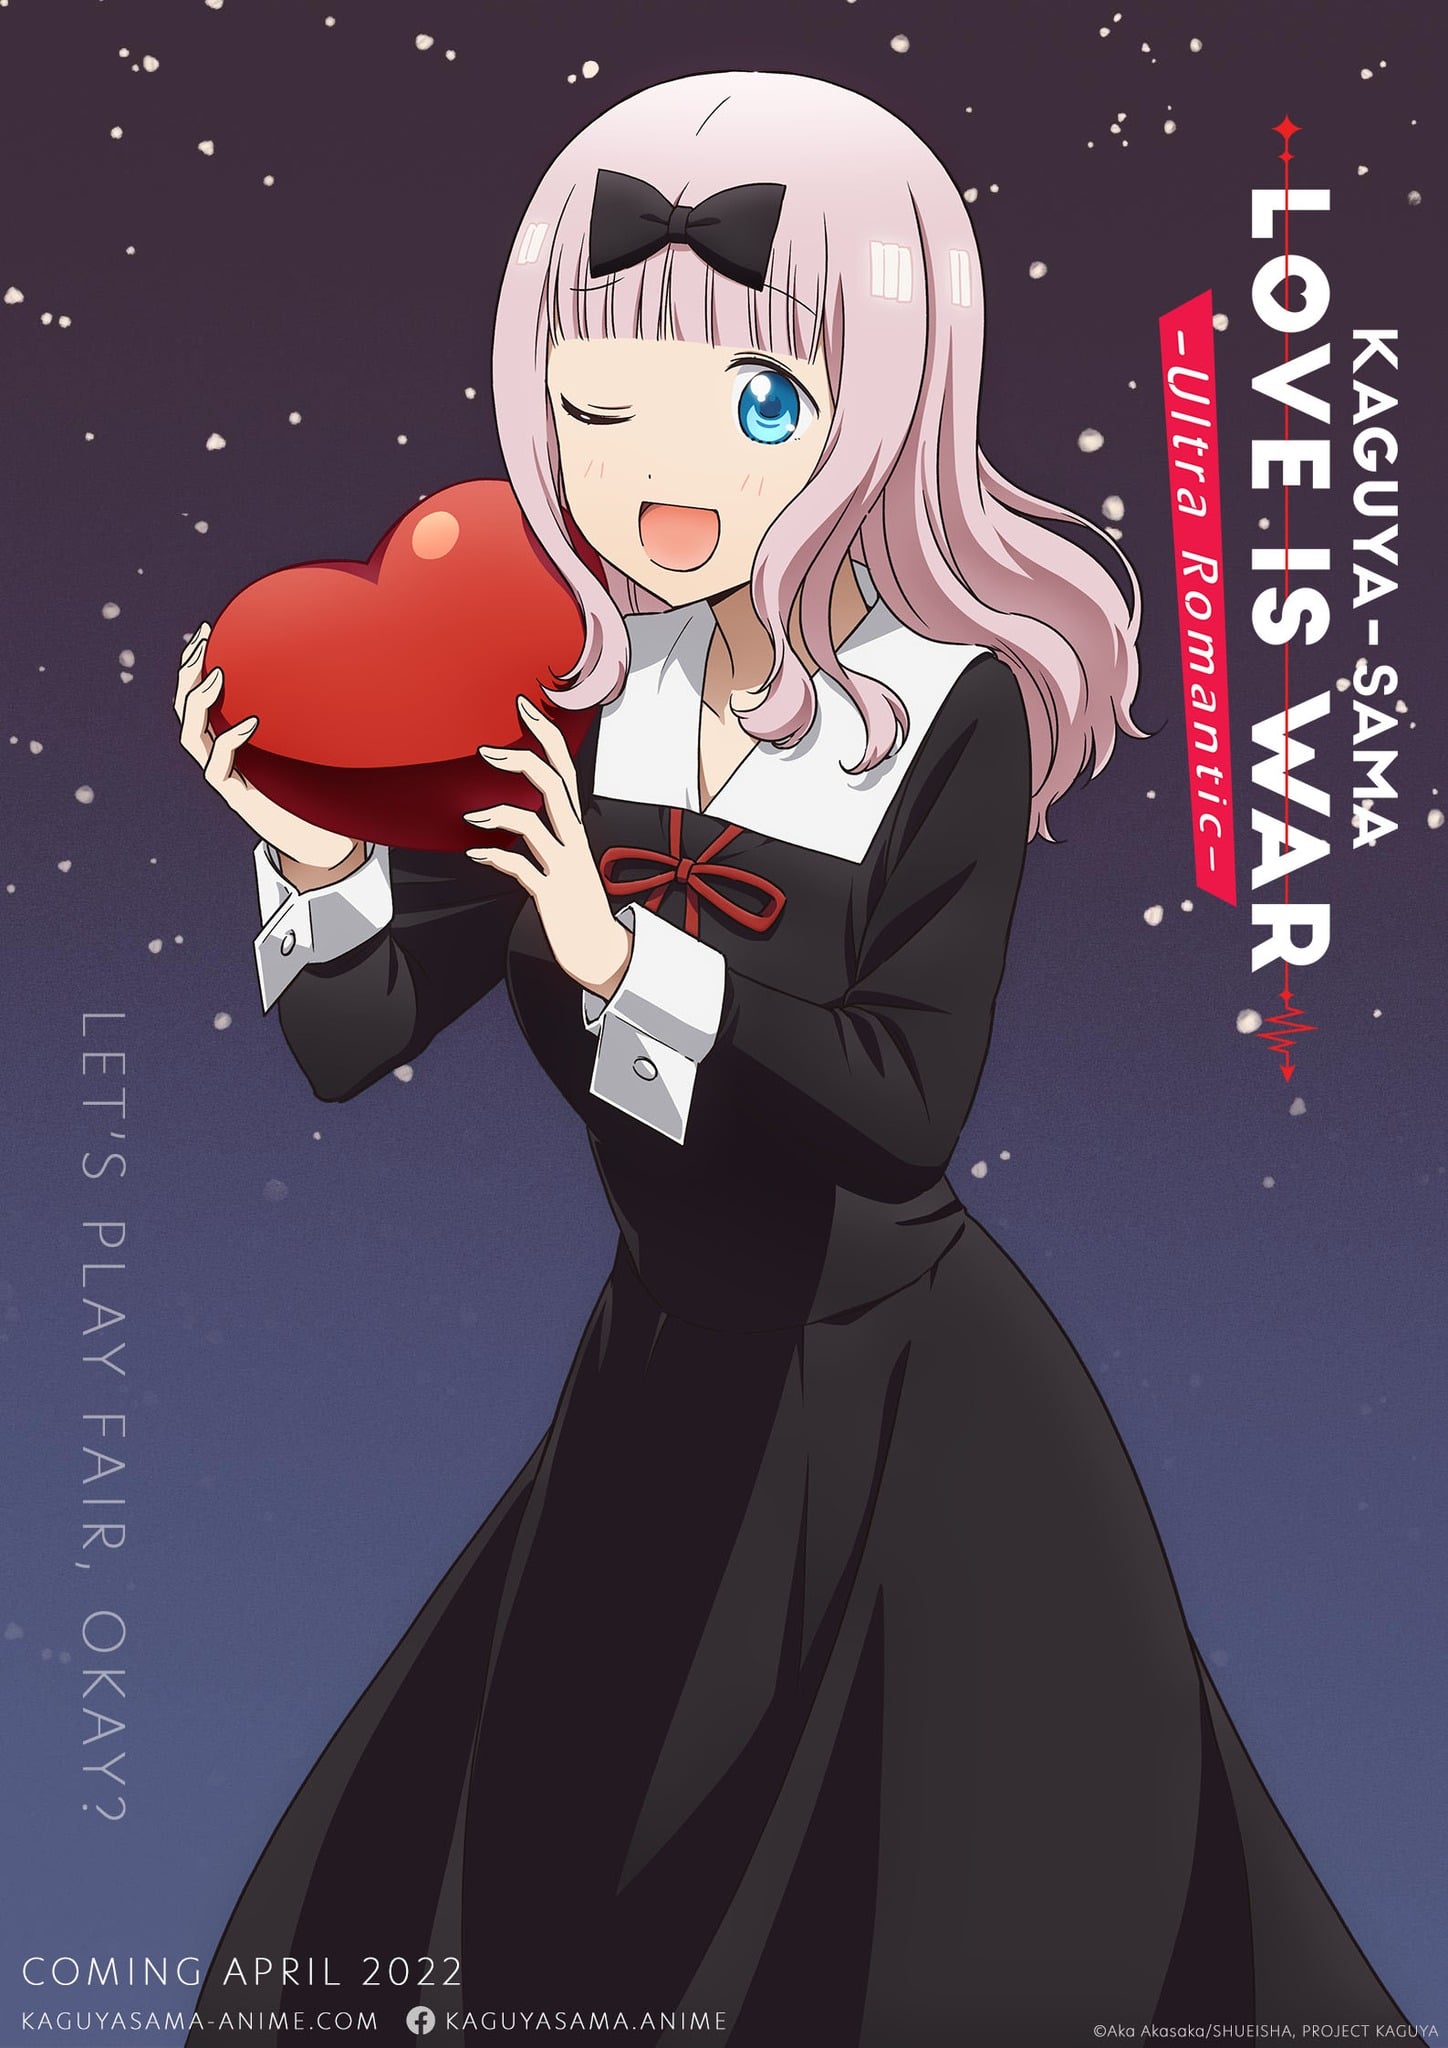 Kaguya-sama wa Kokurasetai: Love Is War Official Fan Book | Akasaka Aka Art  New